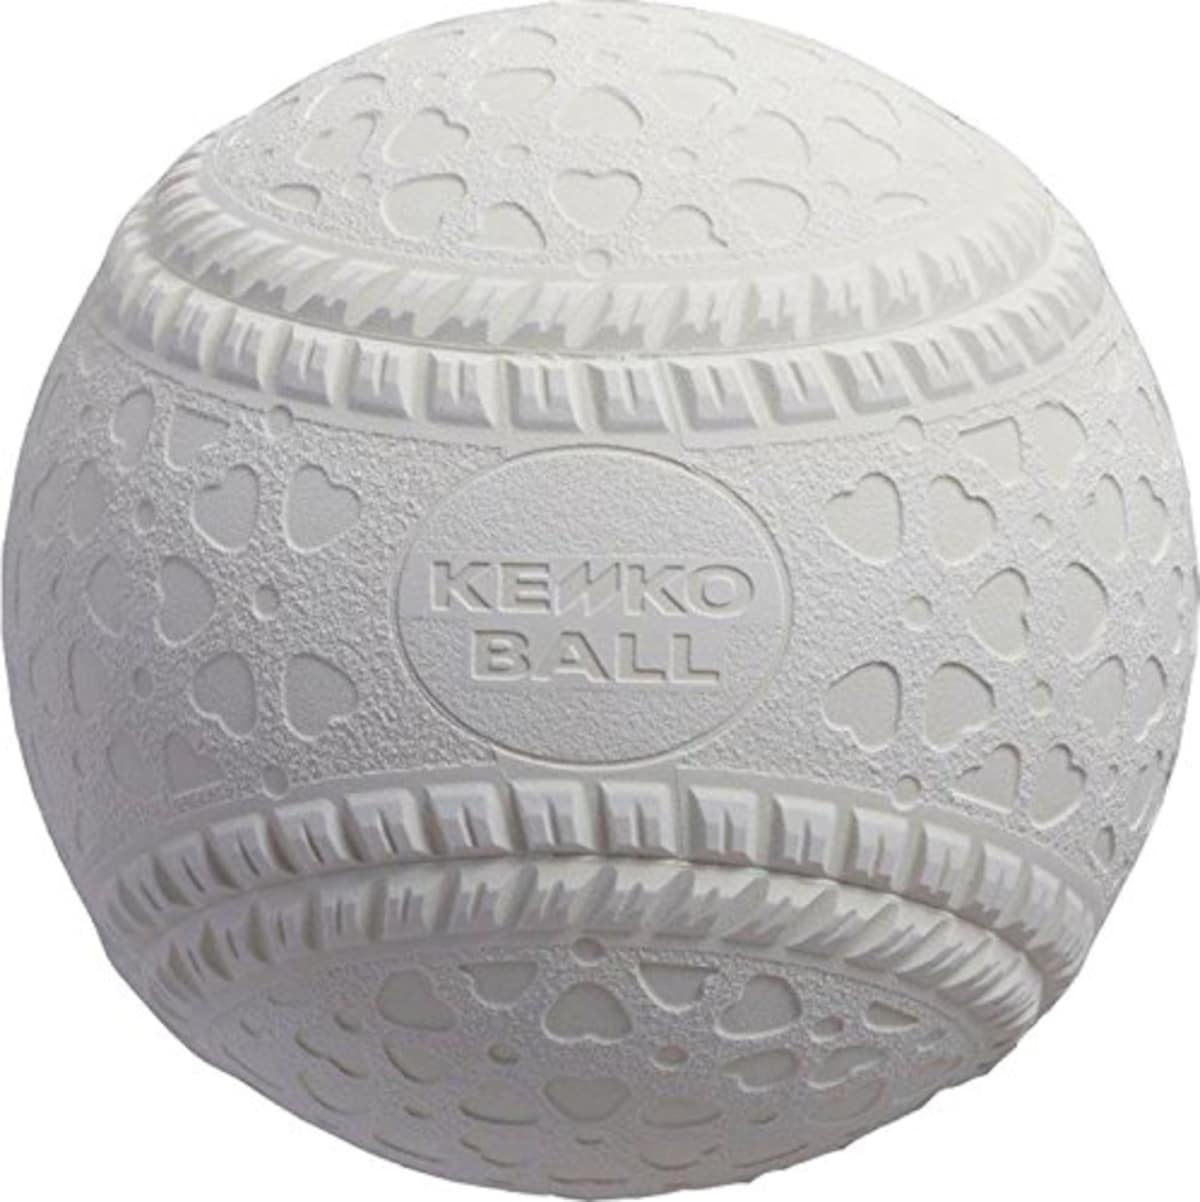  ナガセケンコー(KENKO) 軟式 野球 ボール 公認球 M号 (一般・中学生用) 画像2 